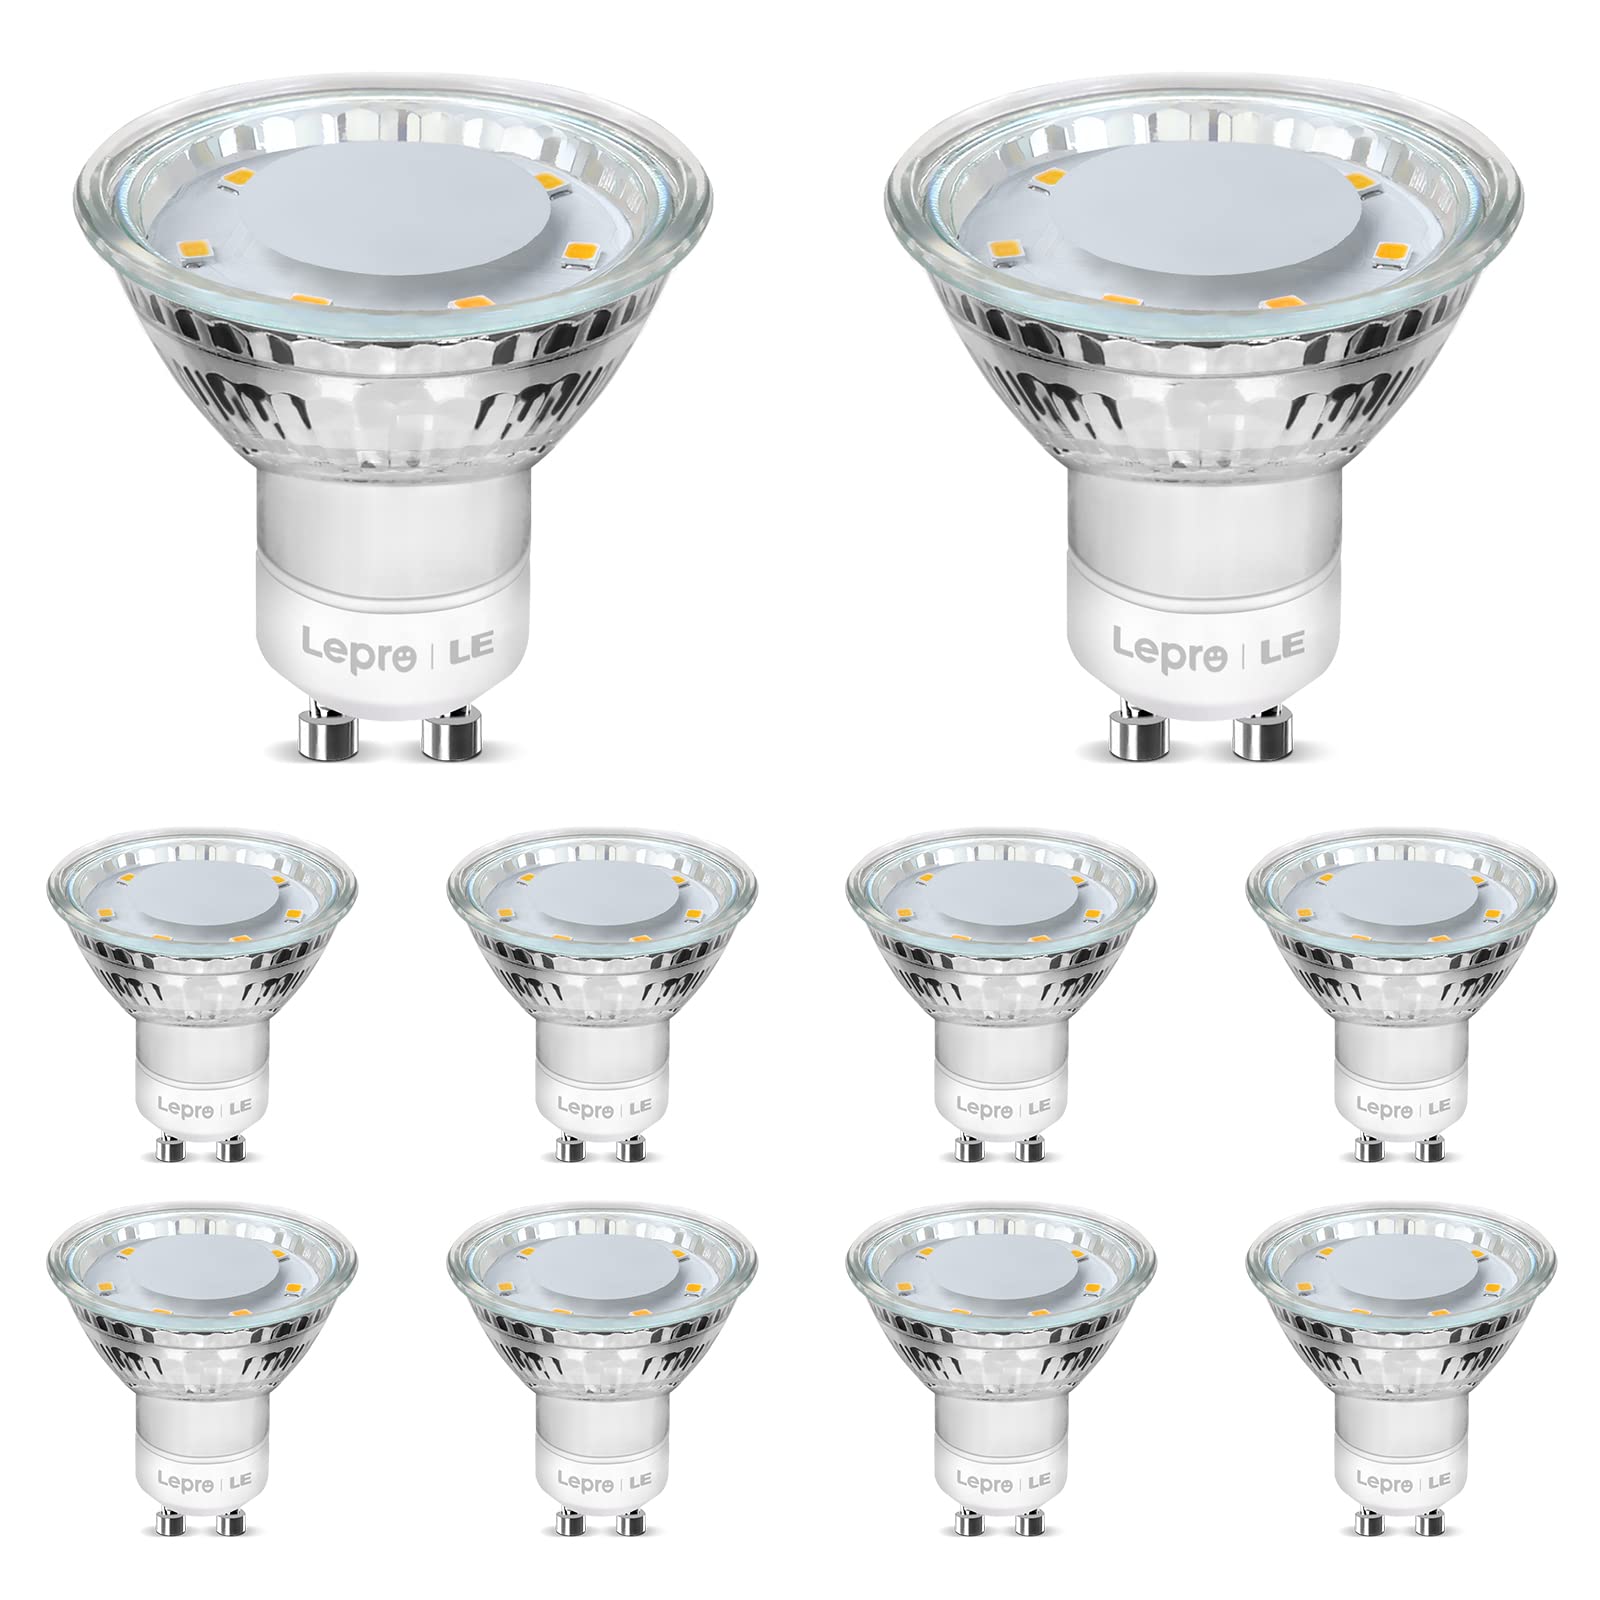 Lepro GU10 LED Warmweiss Lampe, 4W Ersetzt 50W Glühbirne, 325 Lumen 2700K GU 10 Lampen Warmweiß, Abstrahlwinkel 100°Flimmerfrei Strahler, Nicht Dimmbar Reflektor Lampen, 10er-Pack